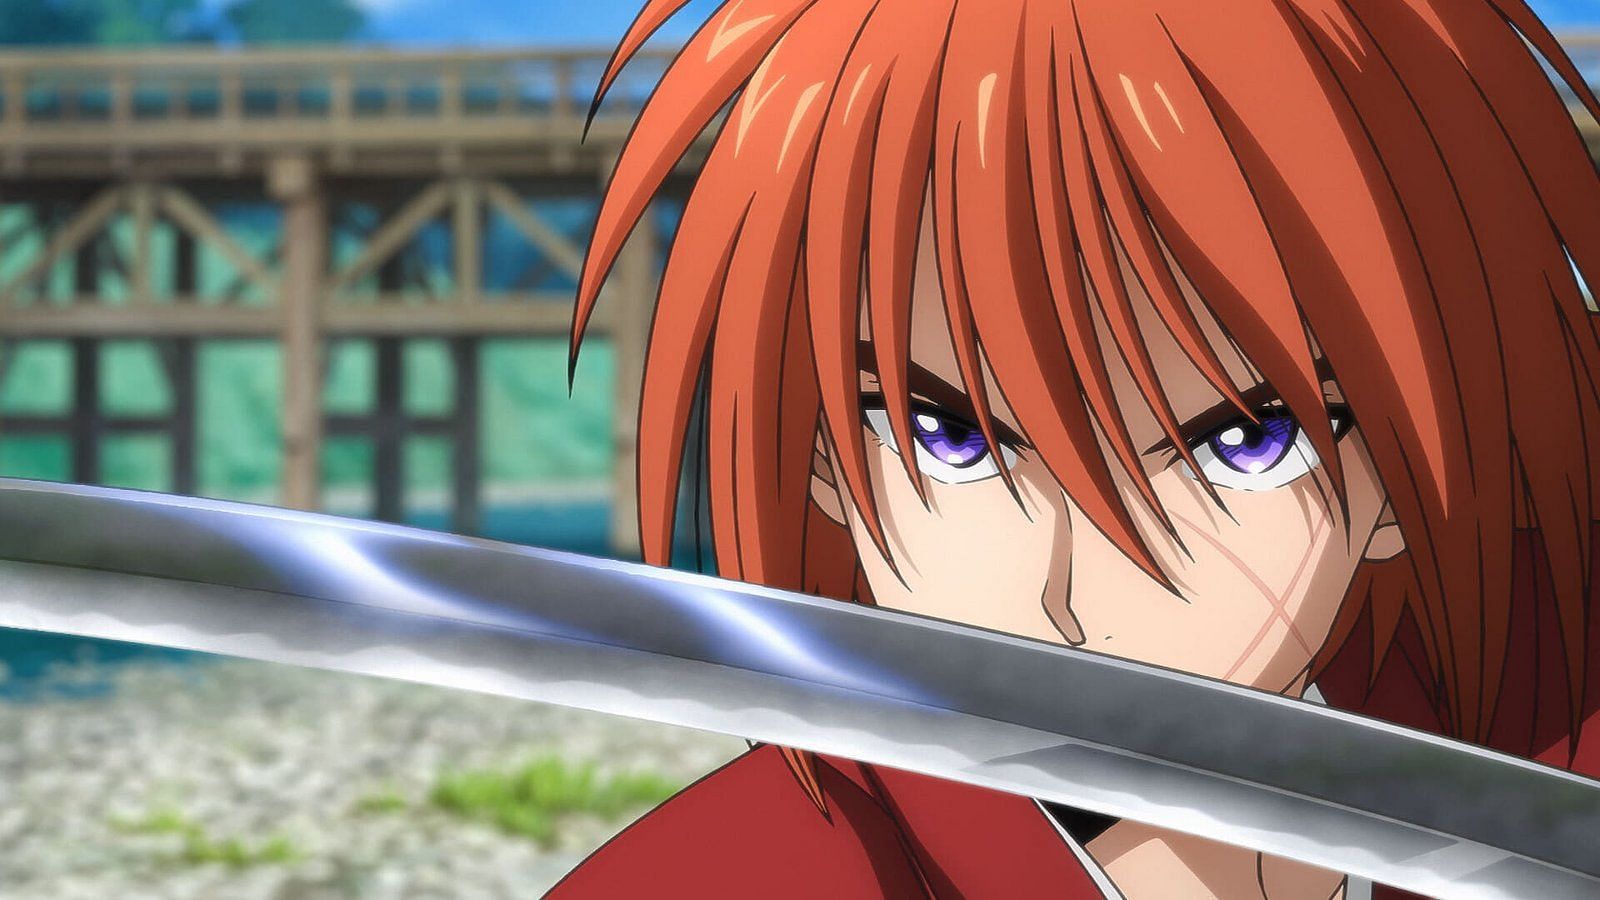 Rurouni Kenshin (Image via Studio Gallop, Studio Deen)